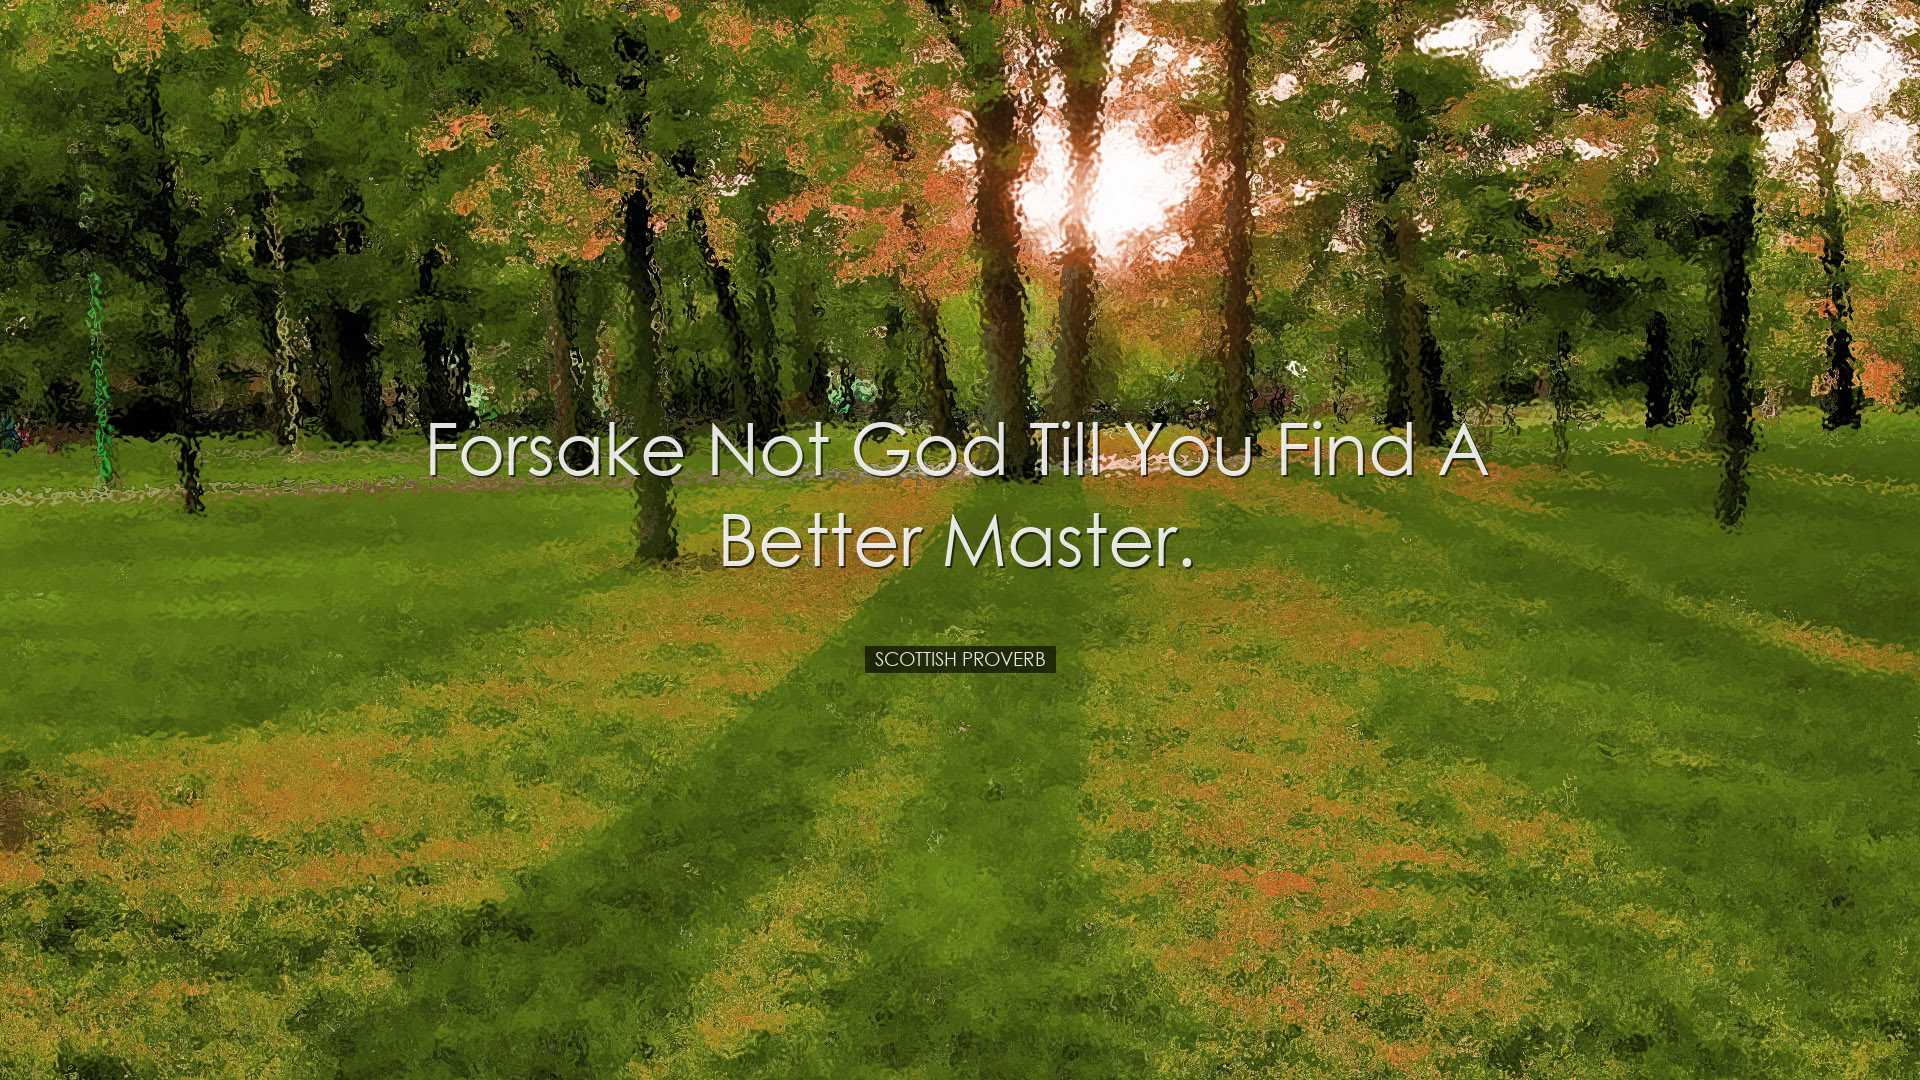 Forsake not God till you find a better master. - Scottish Proverb